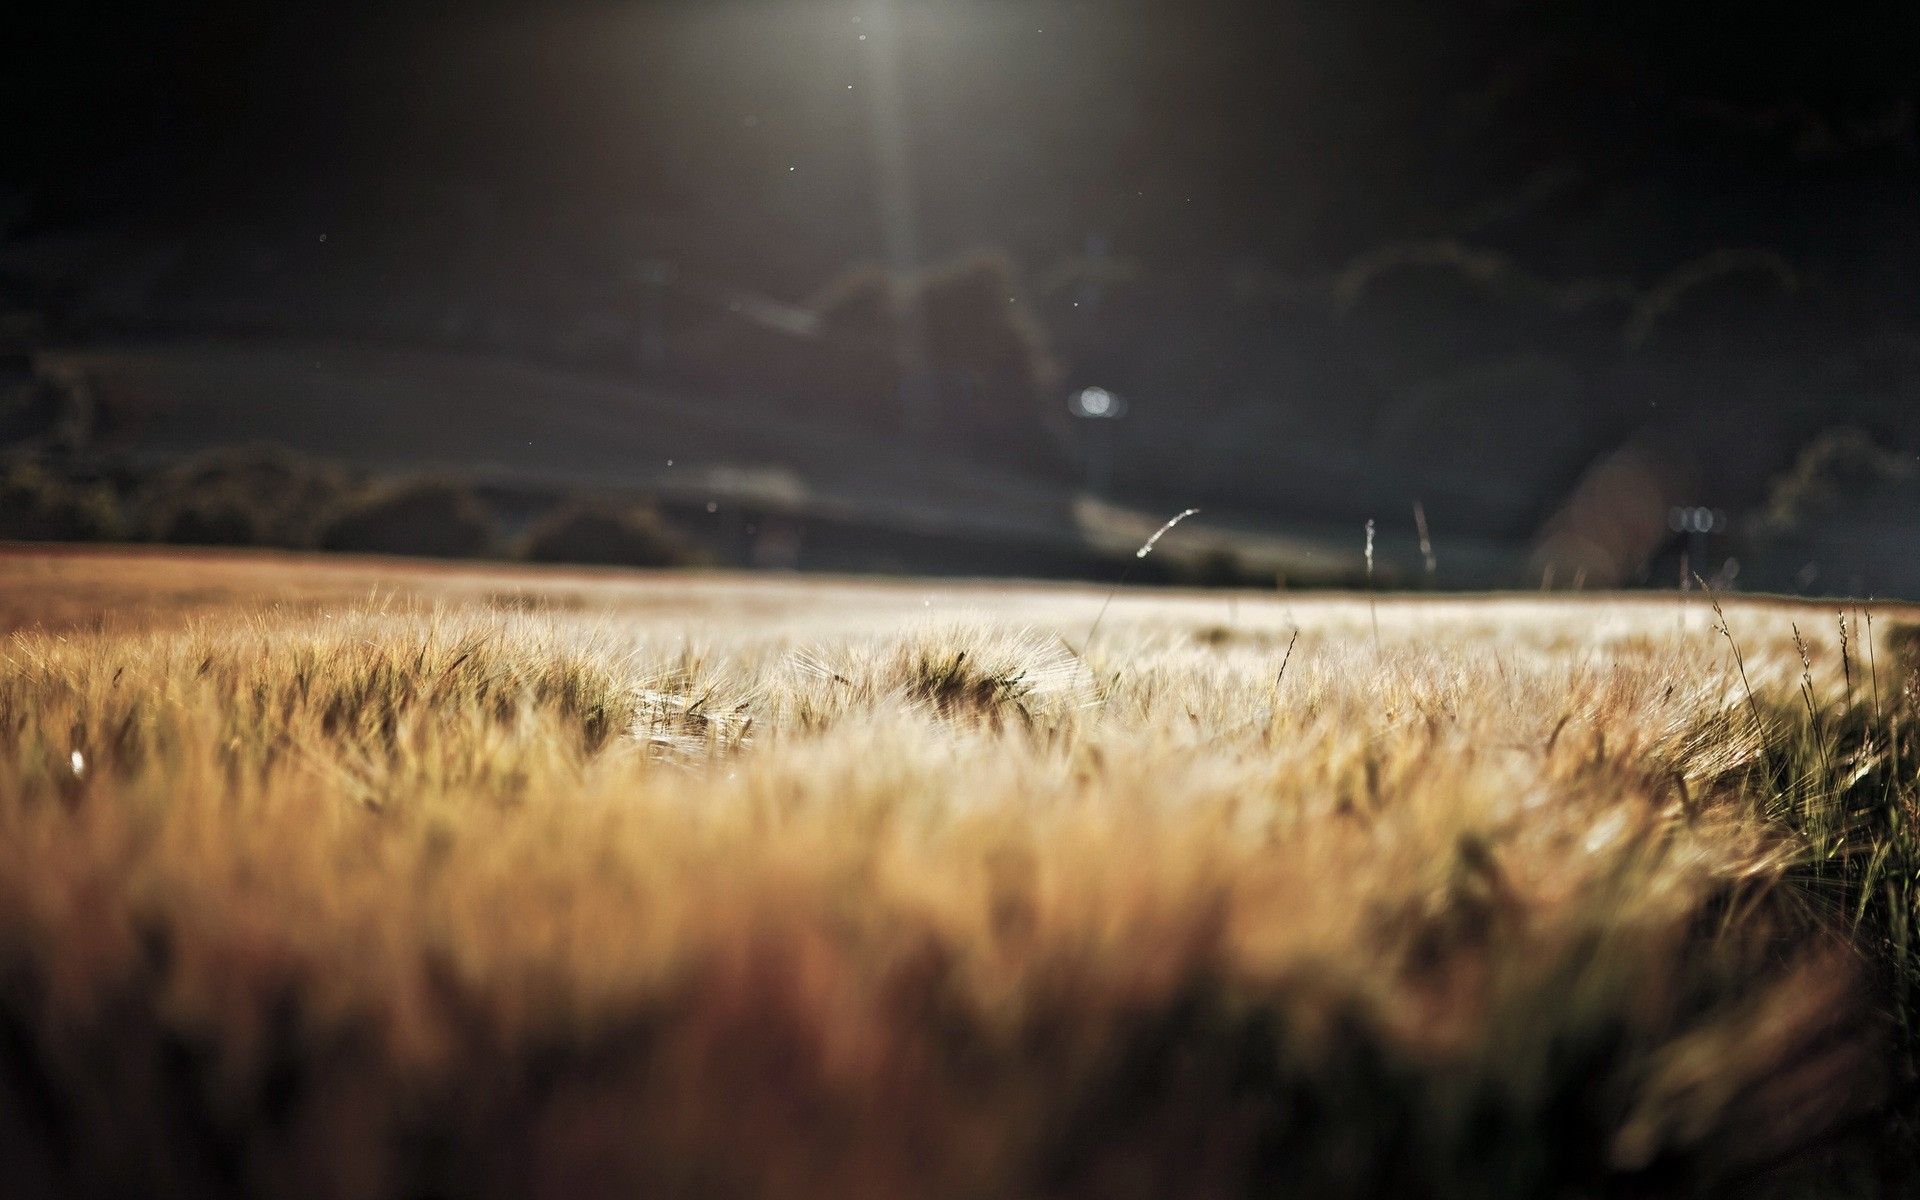 Field of Wheat in Storm Dark Light wallpapers | Field of Wheat in ...